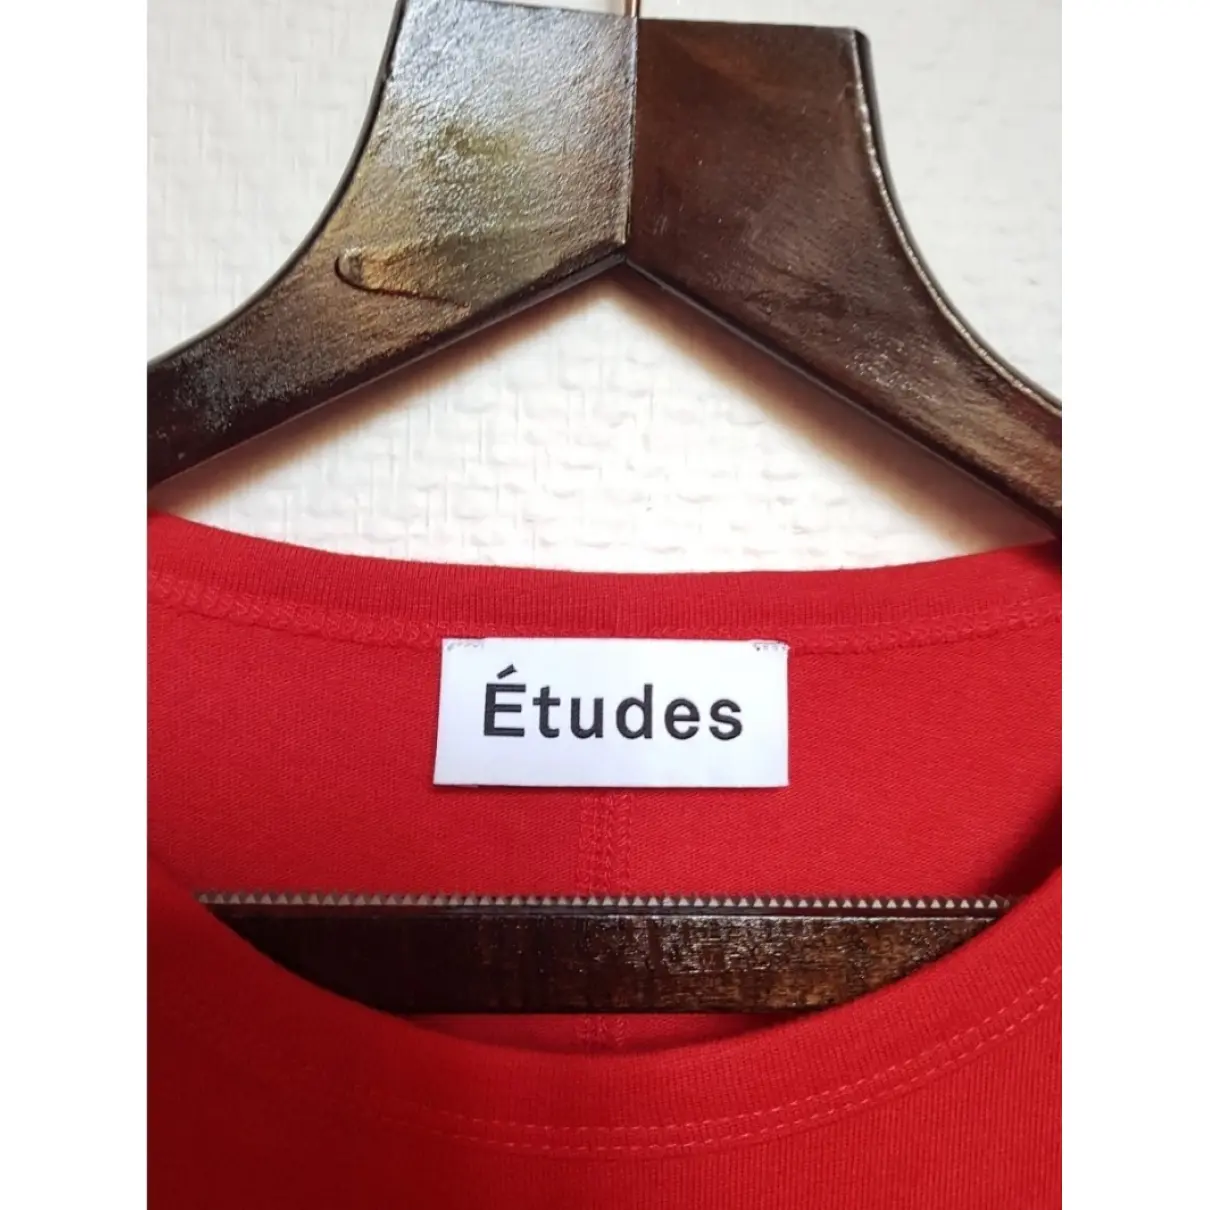 Buy Études Studio Red Cotton T-shirt online